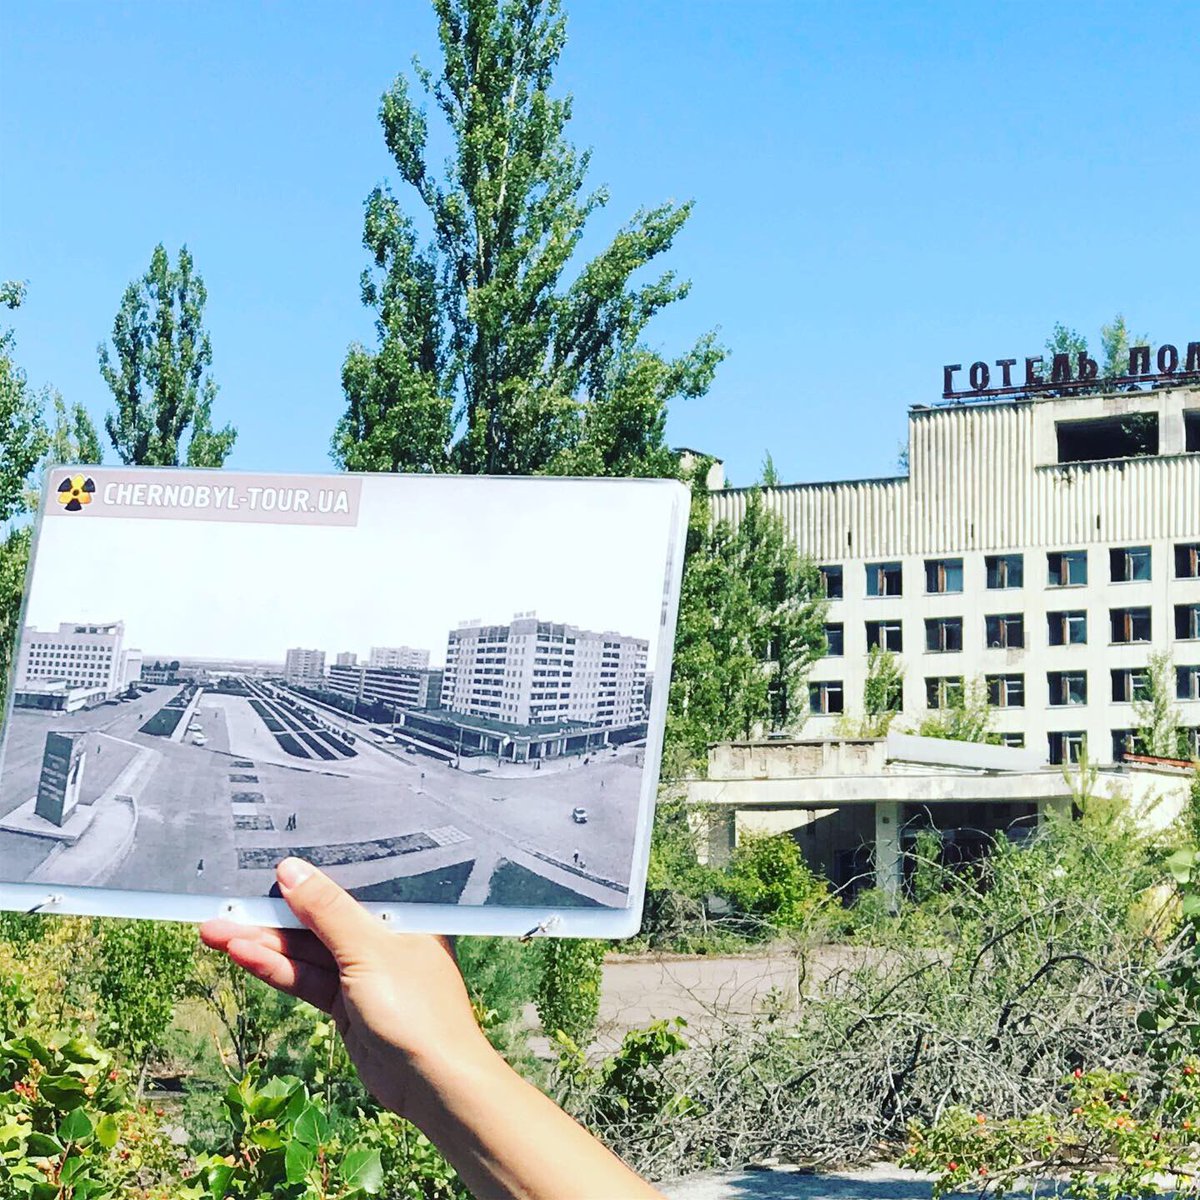 nous nous dirigeons ensuite vers la place centrale où se trouve un théâtre, un restaurant, un centre commercial, et notamment un hôtel.  #Tchernobyl  (Plus de photos:  http://Instagram.com/nashtagstagram )